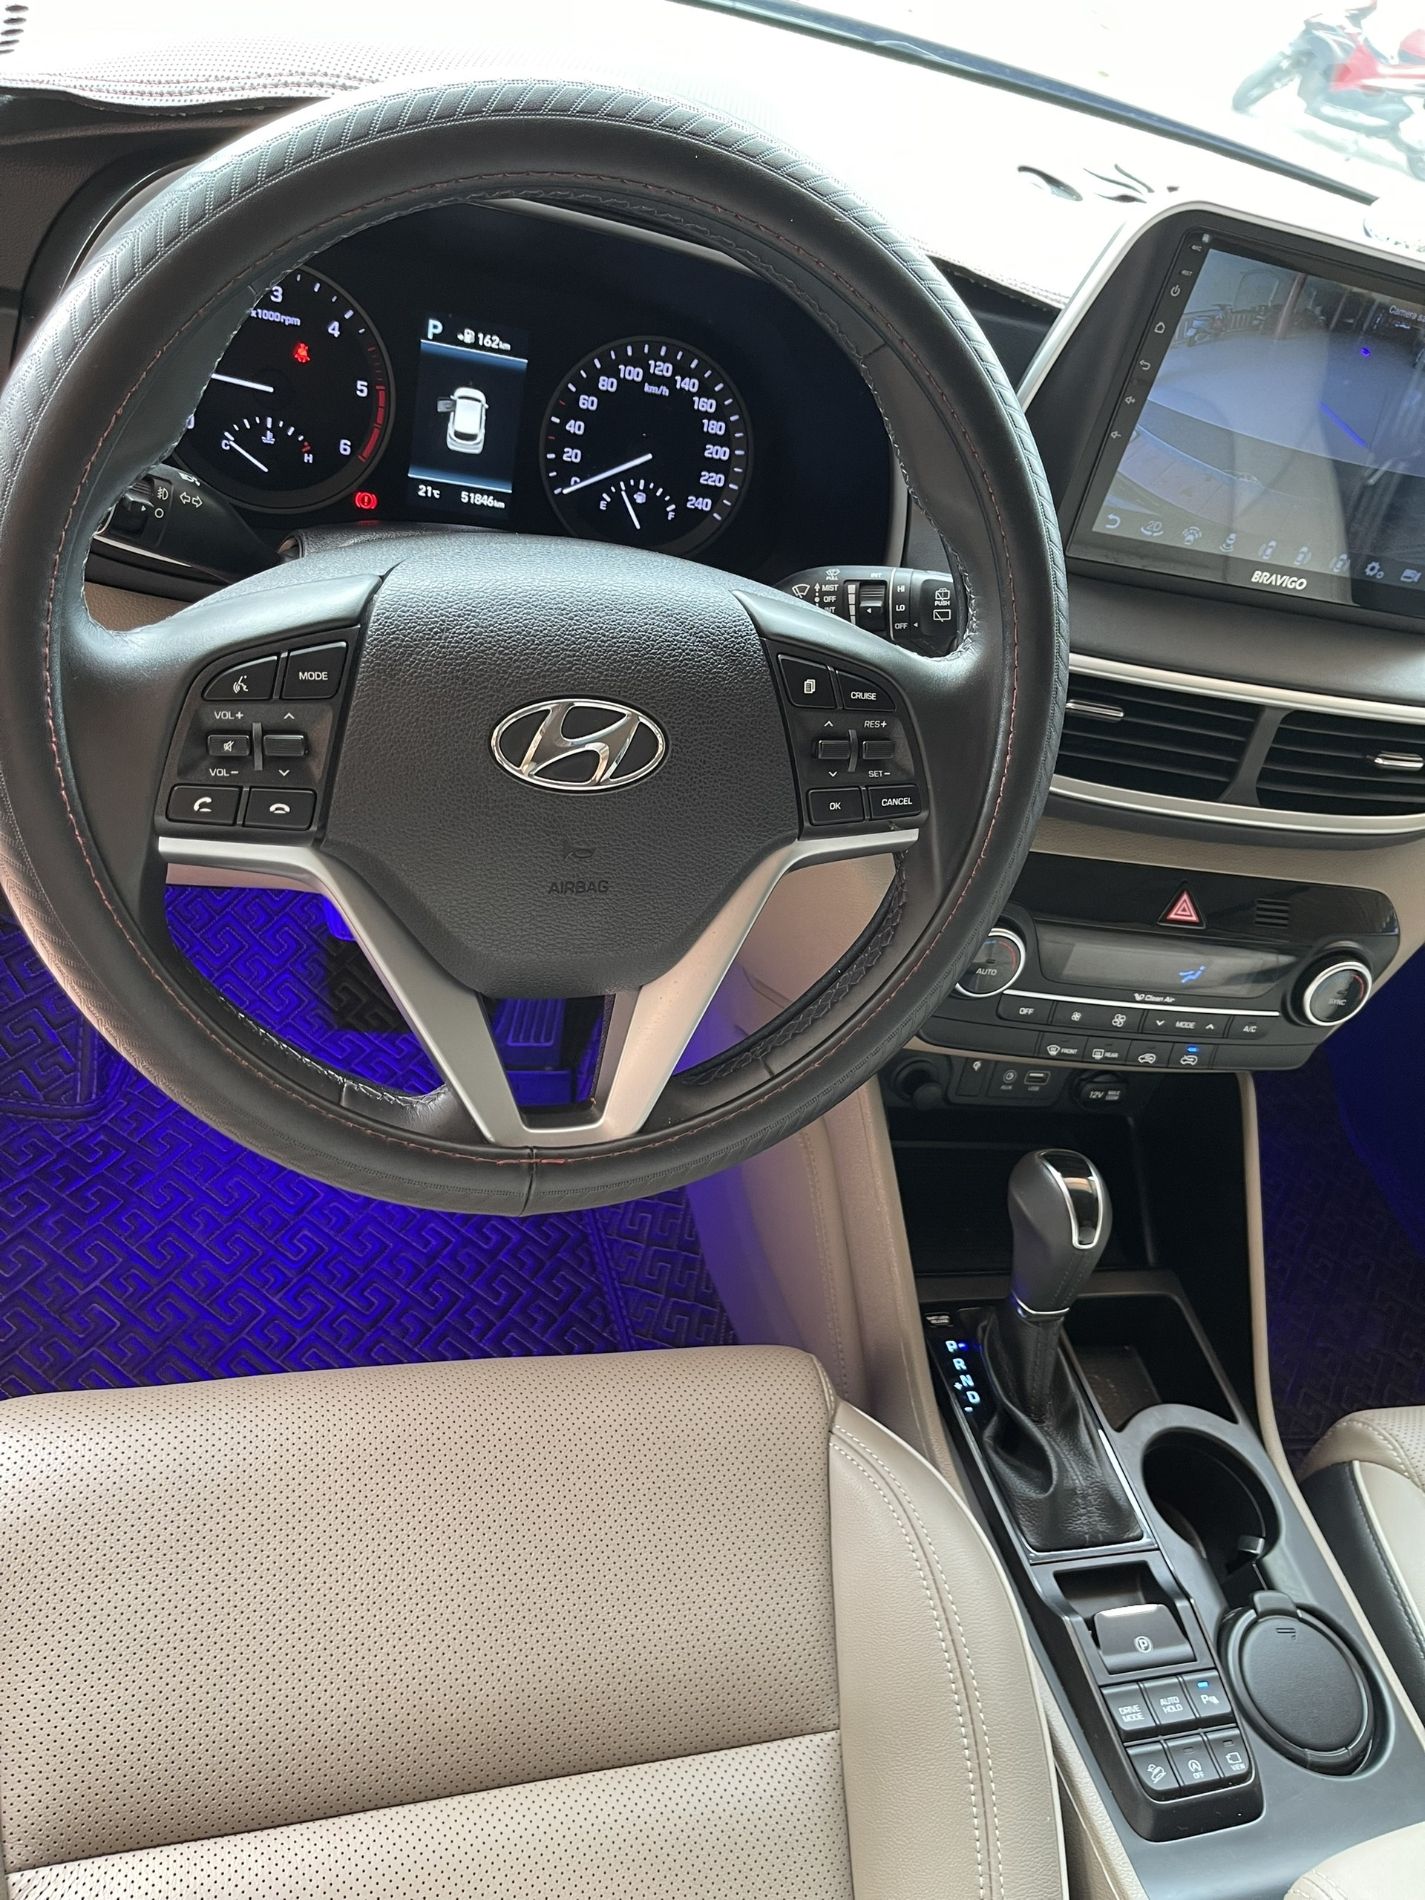 Hyundai Tucson 2020 - Màu đỏ